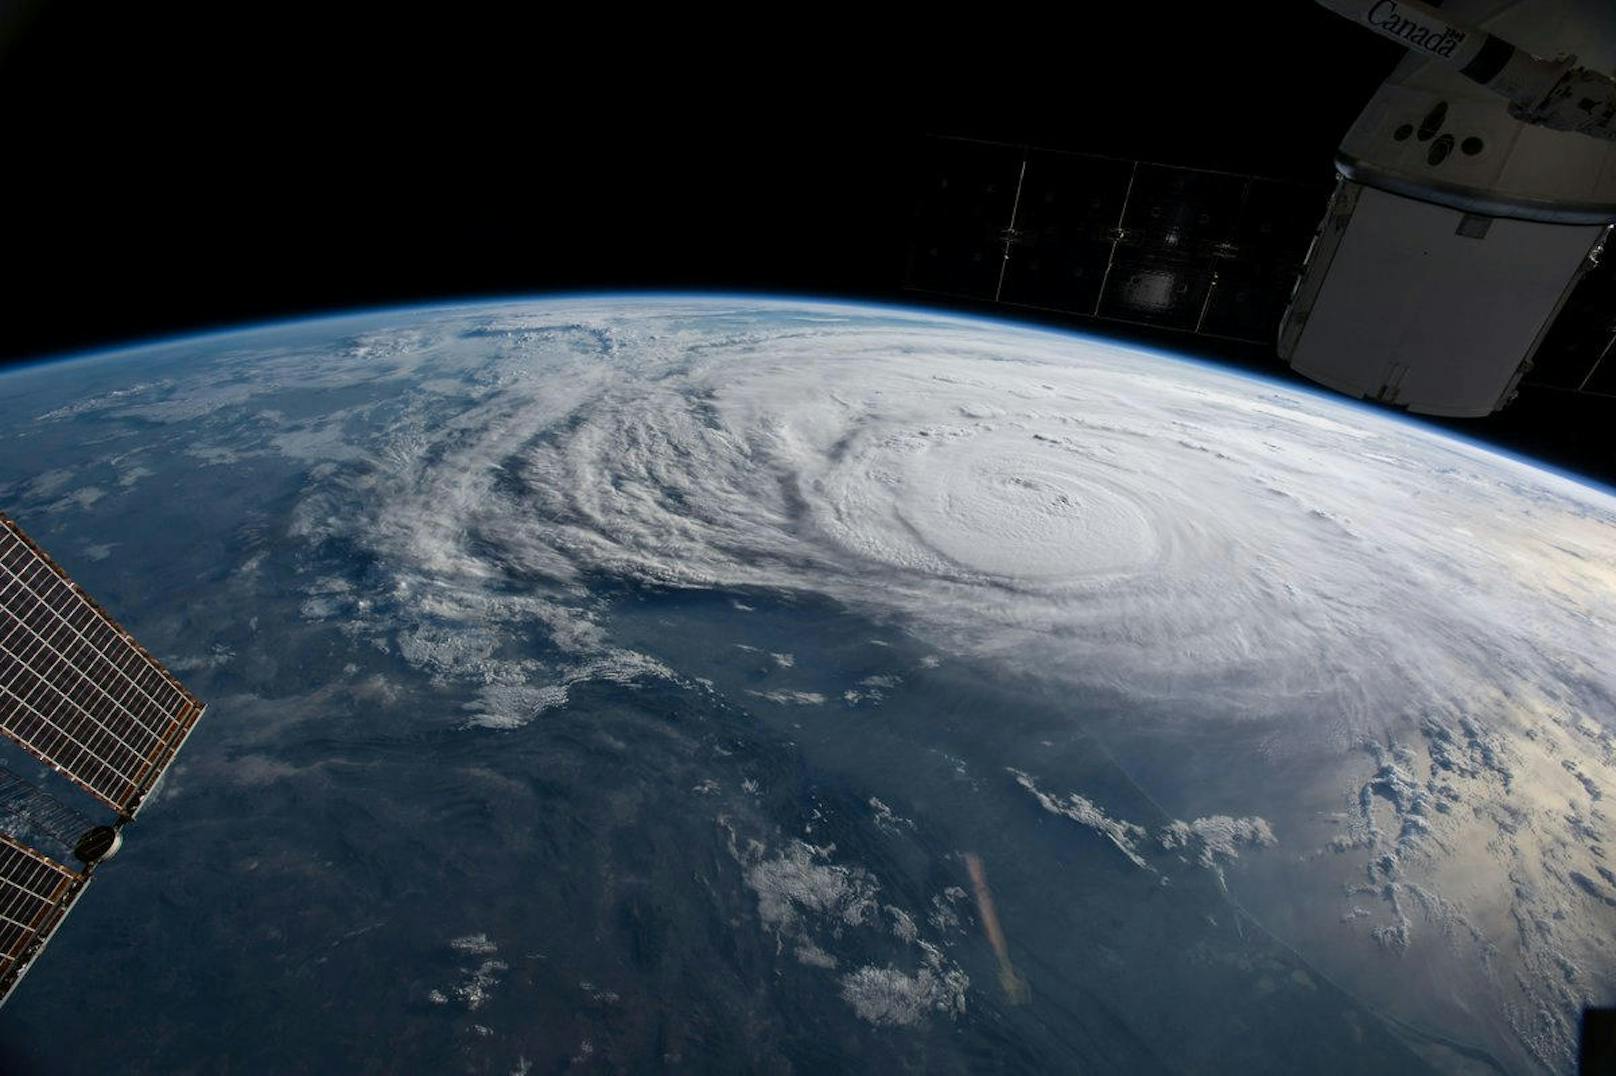 Hurrikan Harvey vom All aus gesehen.